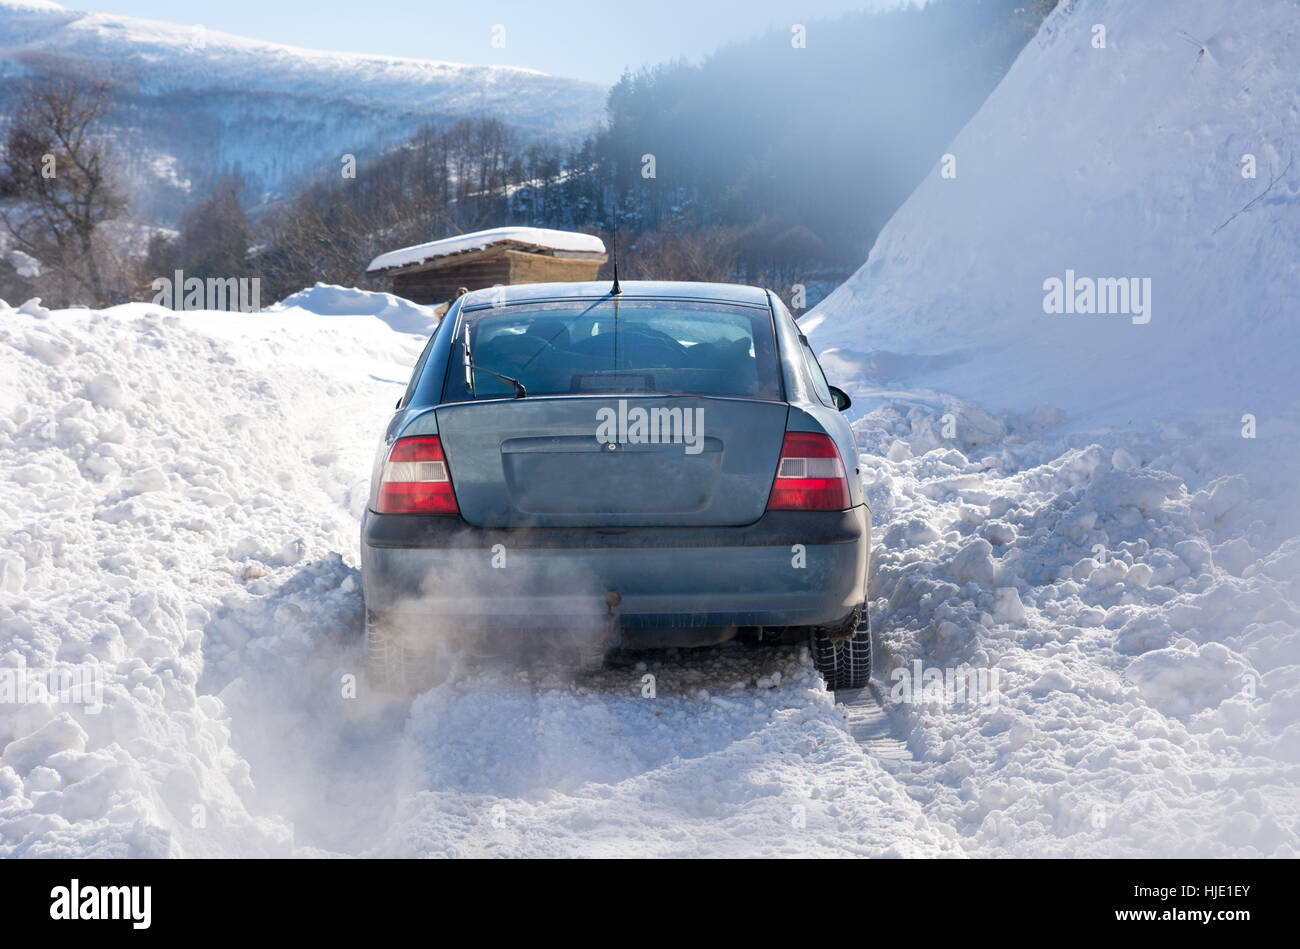 Auto während der Fahrt bergauf im Schnee stecken. Stockfoto